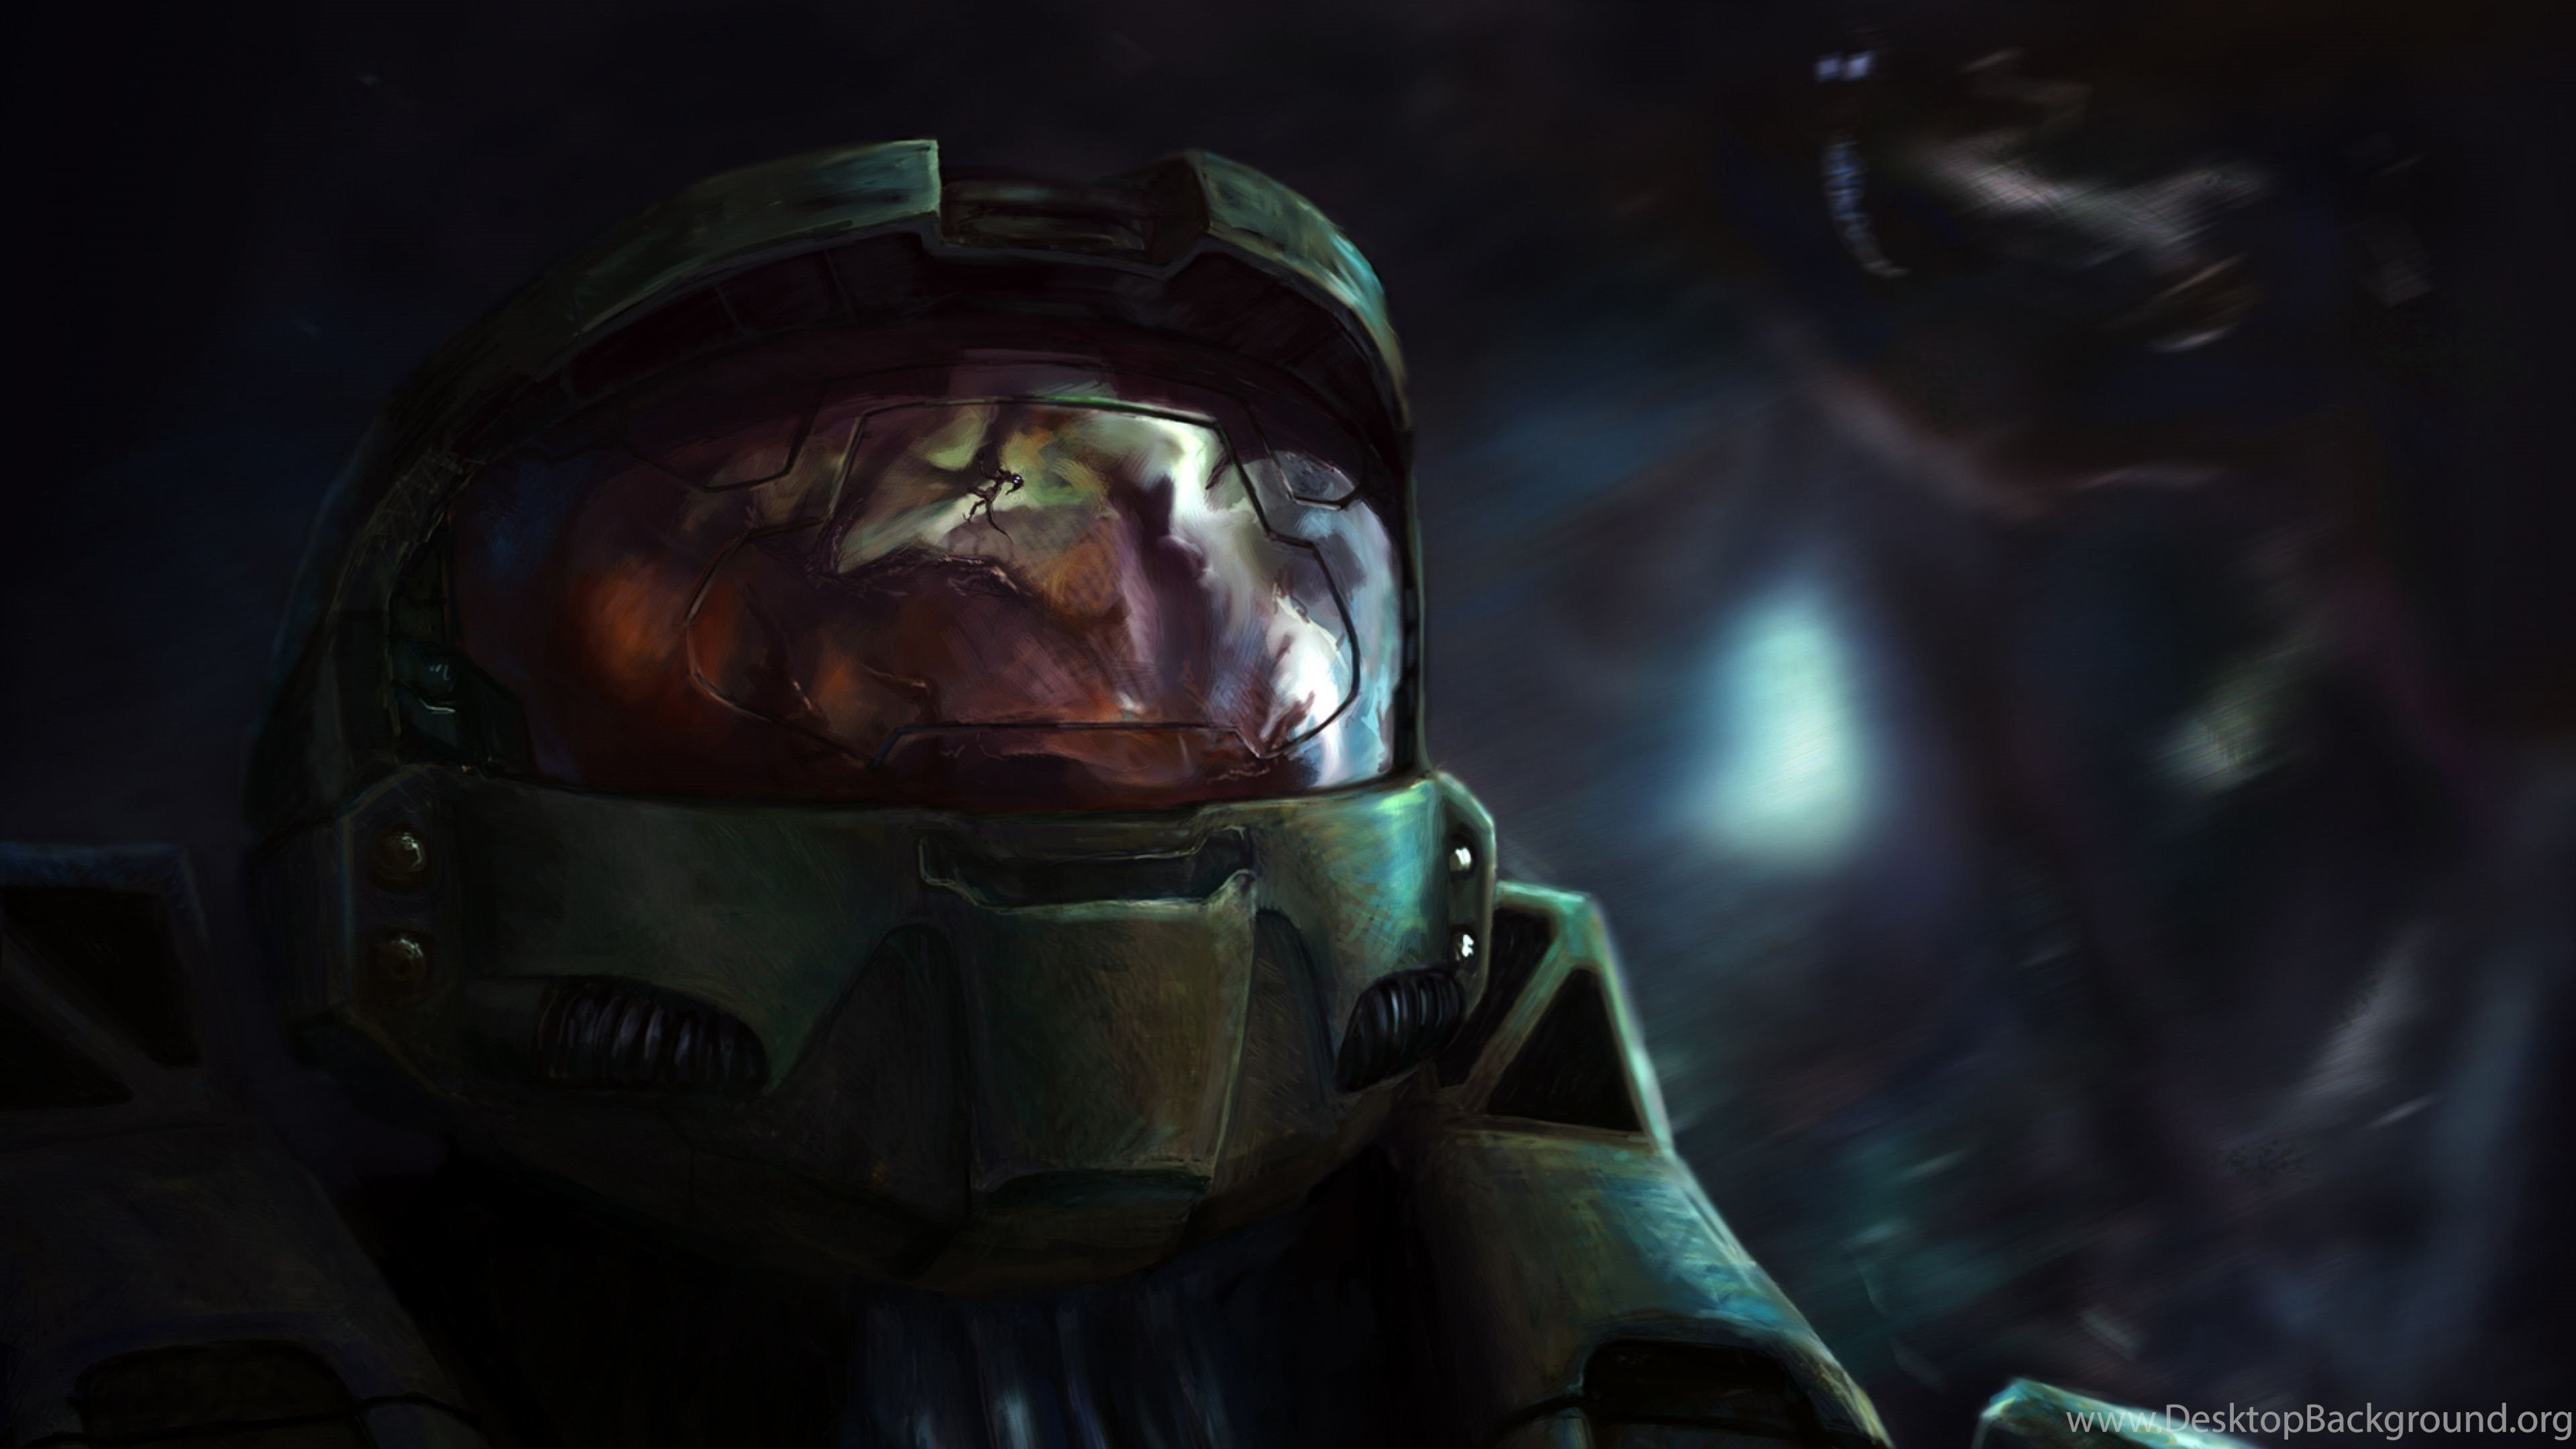 Halo Green Helmet Wearing Robot K 2K Games